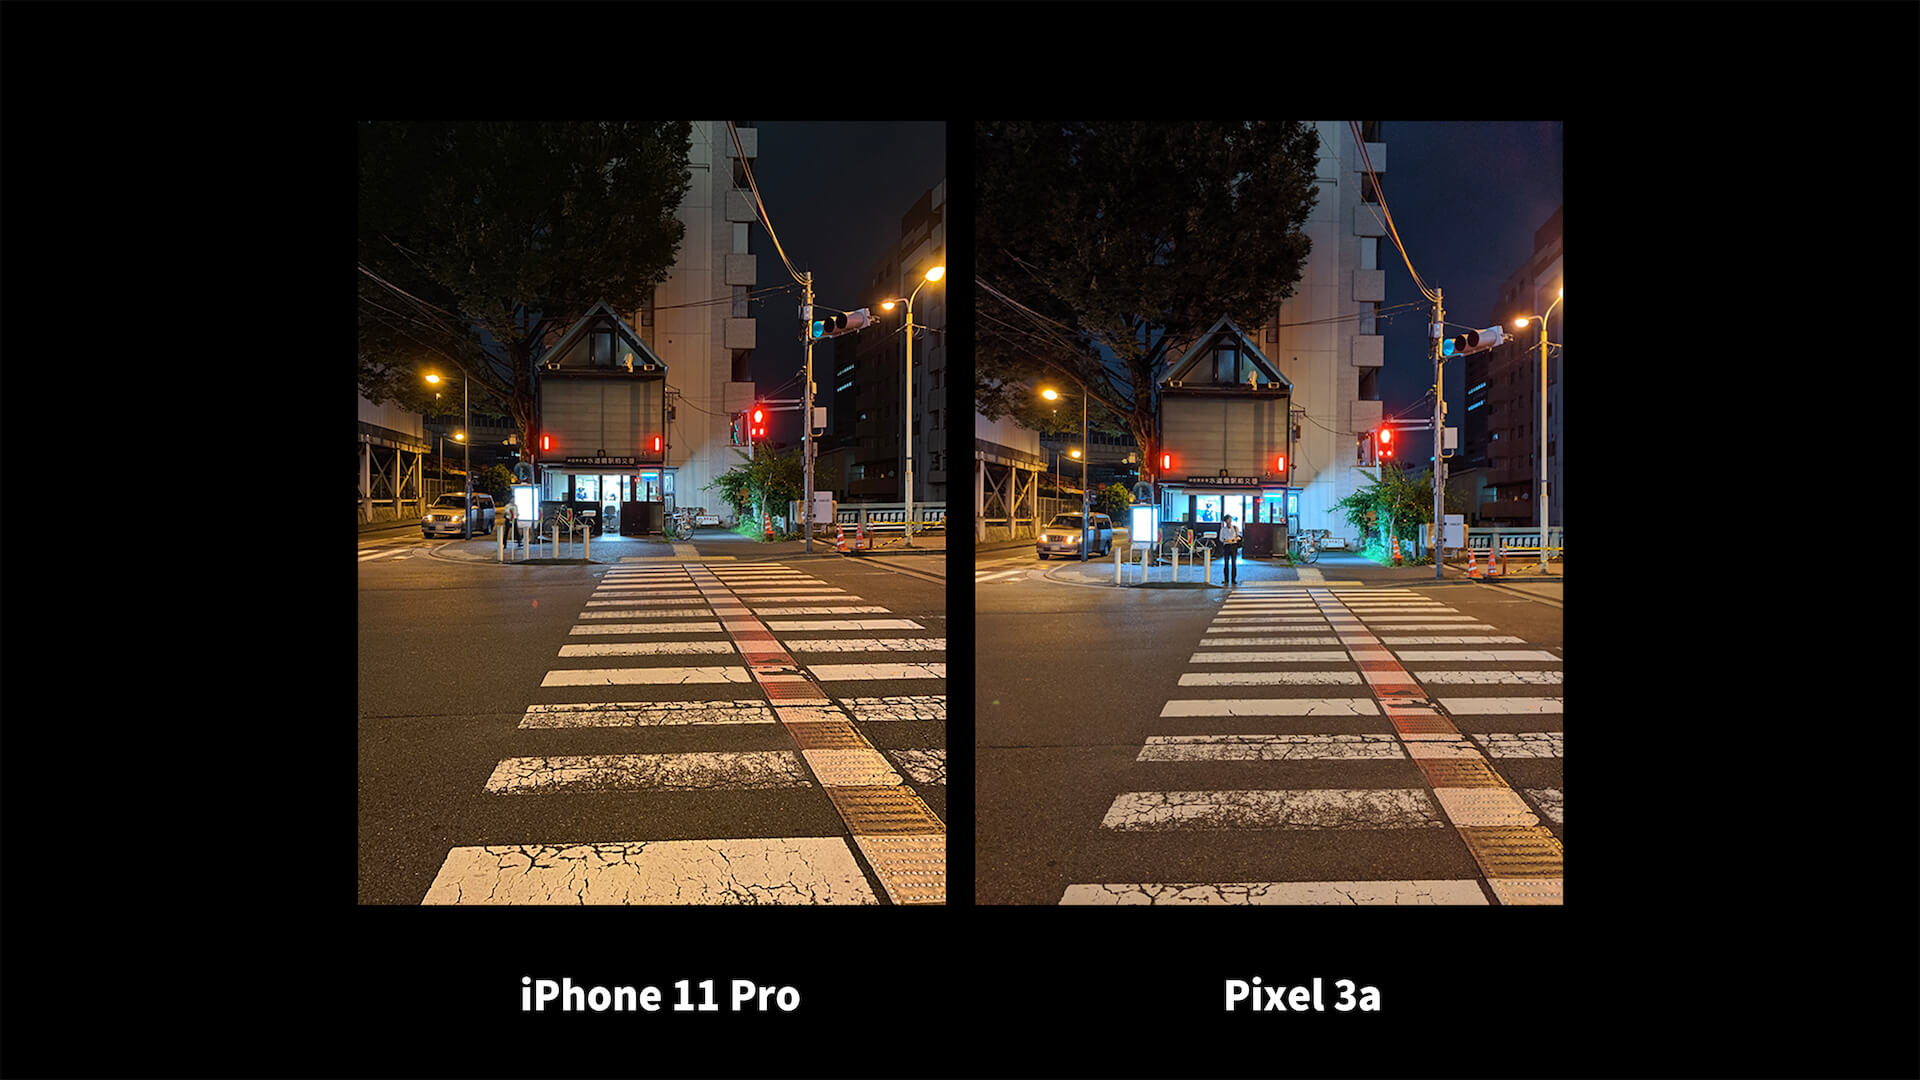 iPhone 11 Pro Pixel 3a ナイトモード 比較 交差点